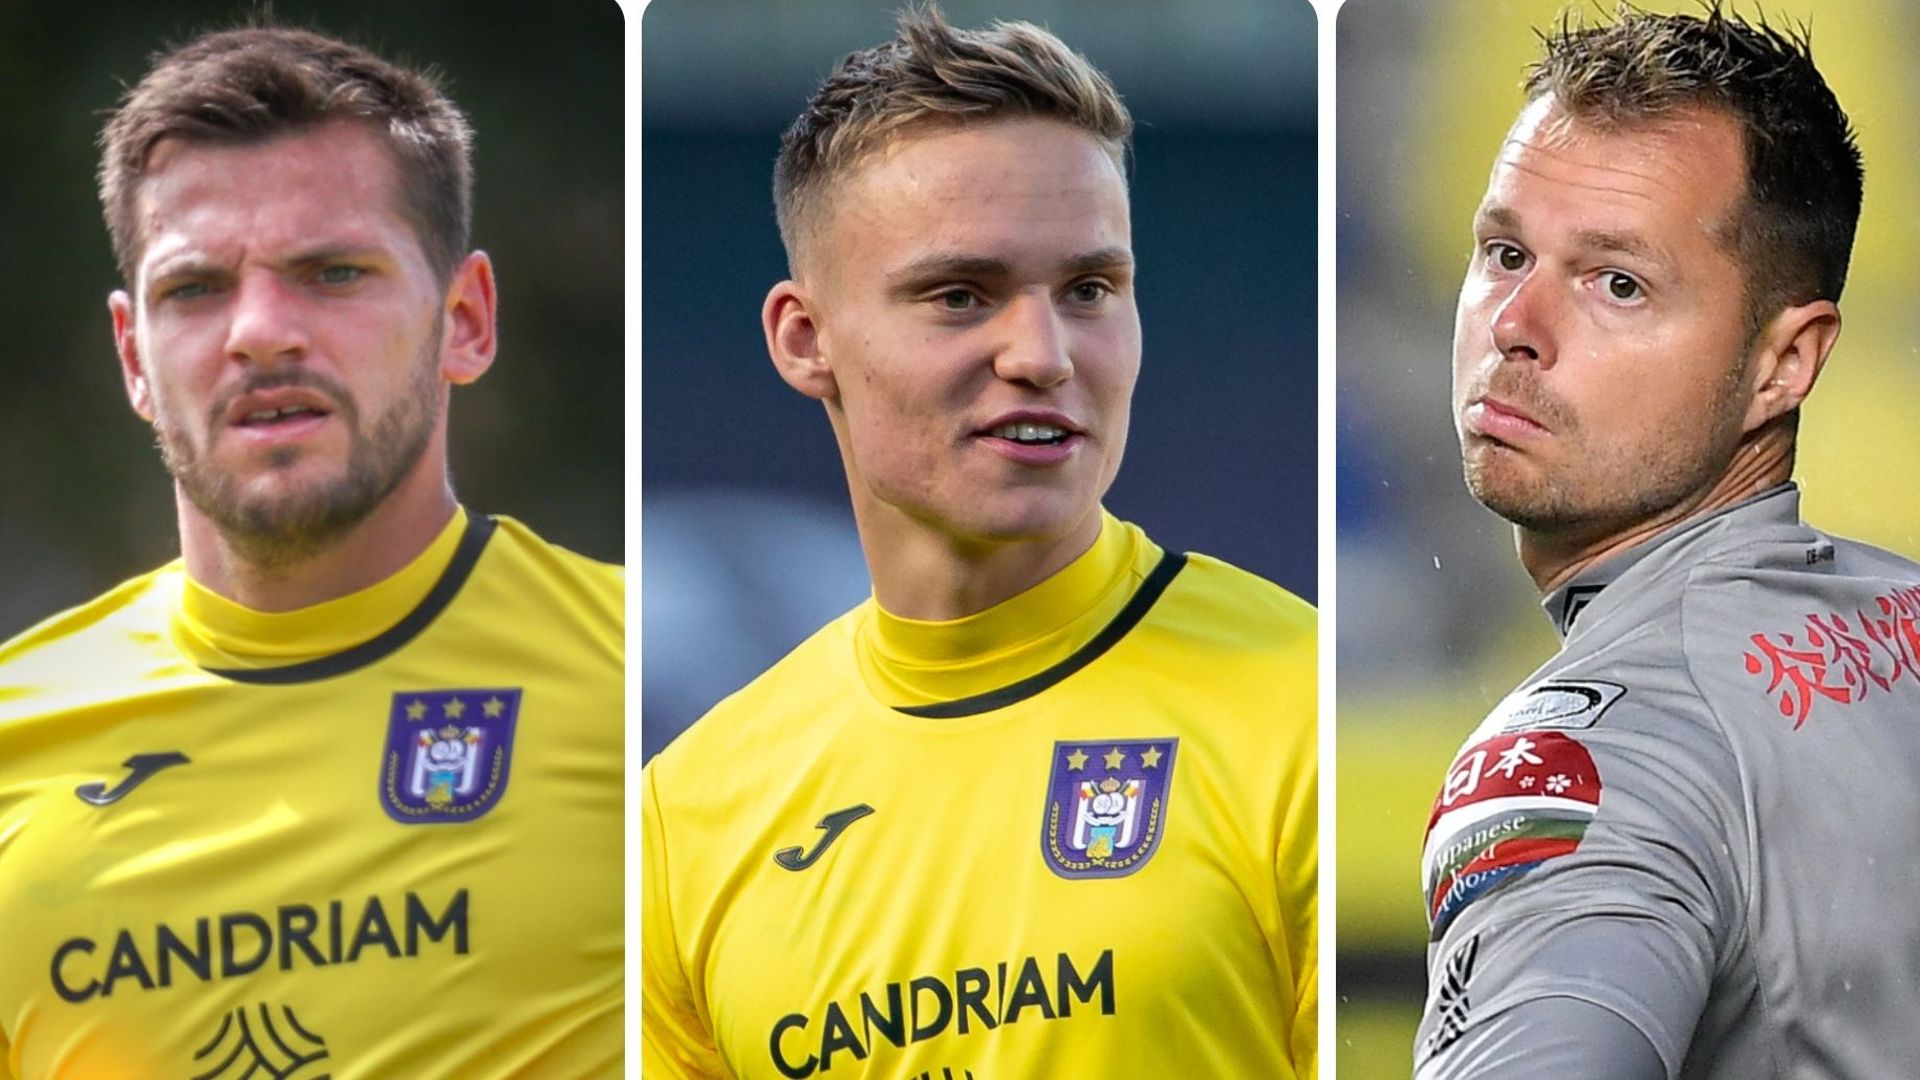 Van Crombrugge, Verbruggen et Steppe le trio de gardiens pour la saison prochaine au Sporting.